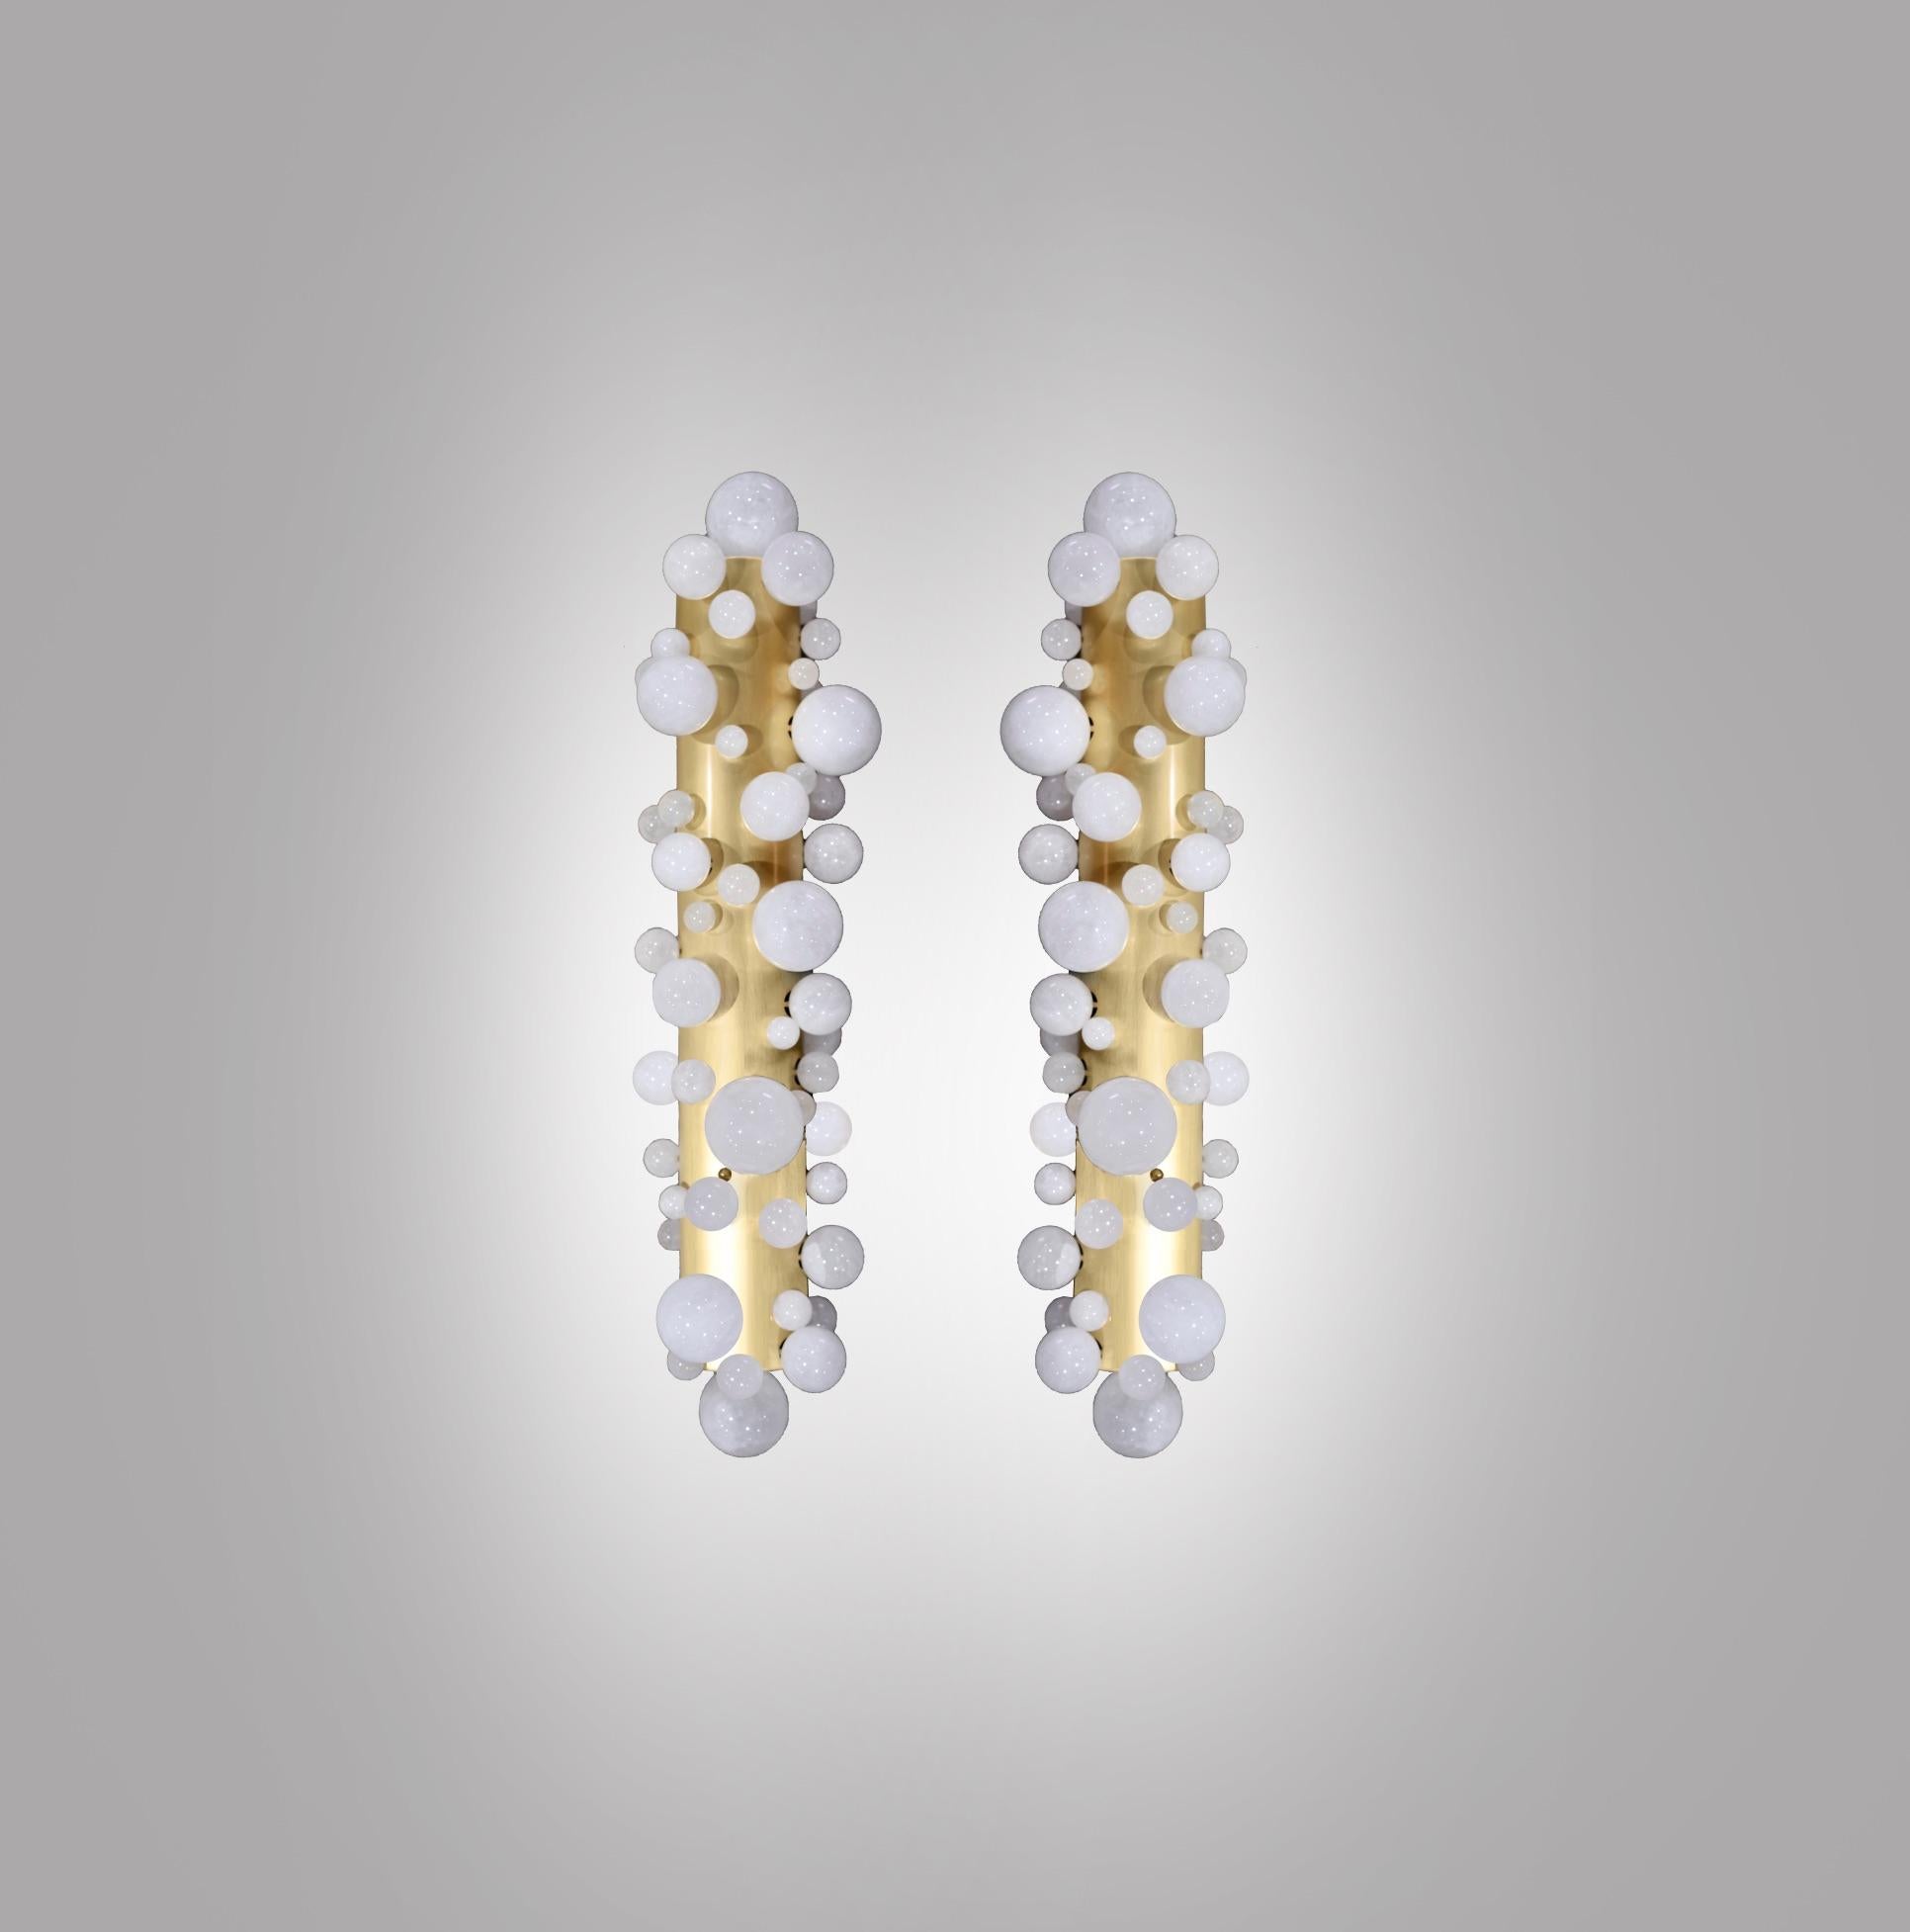 Ein Paar Wandleuchter aus Bergkristall mit matter Messingoberfläche. Erstellt von Phoenix Gallery, NYC.
Jede Leuchte hat vier Steckdosen. Verwenden Sie vier warme 60W LED-Glühbirnen. Insgesamt max. 240 W. Inklusive Glühbirnen.
Kundenspezifische